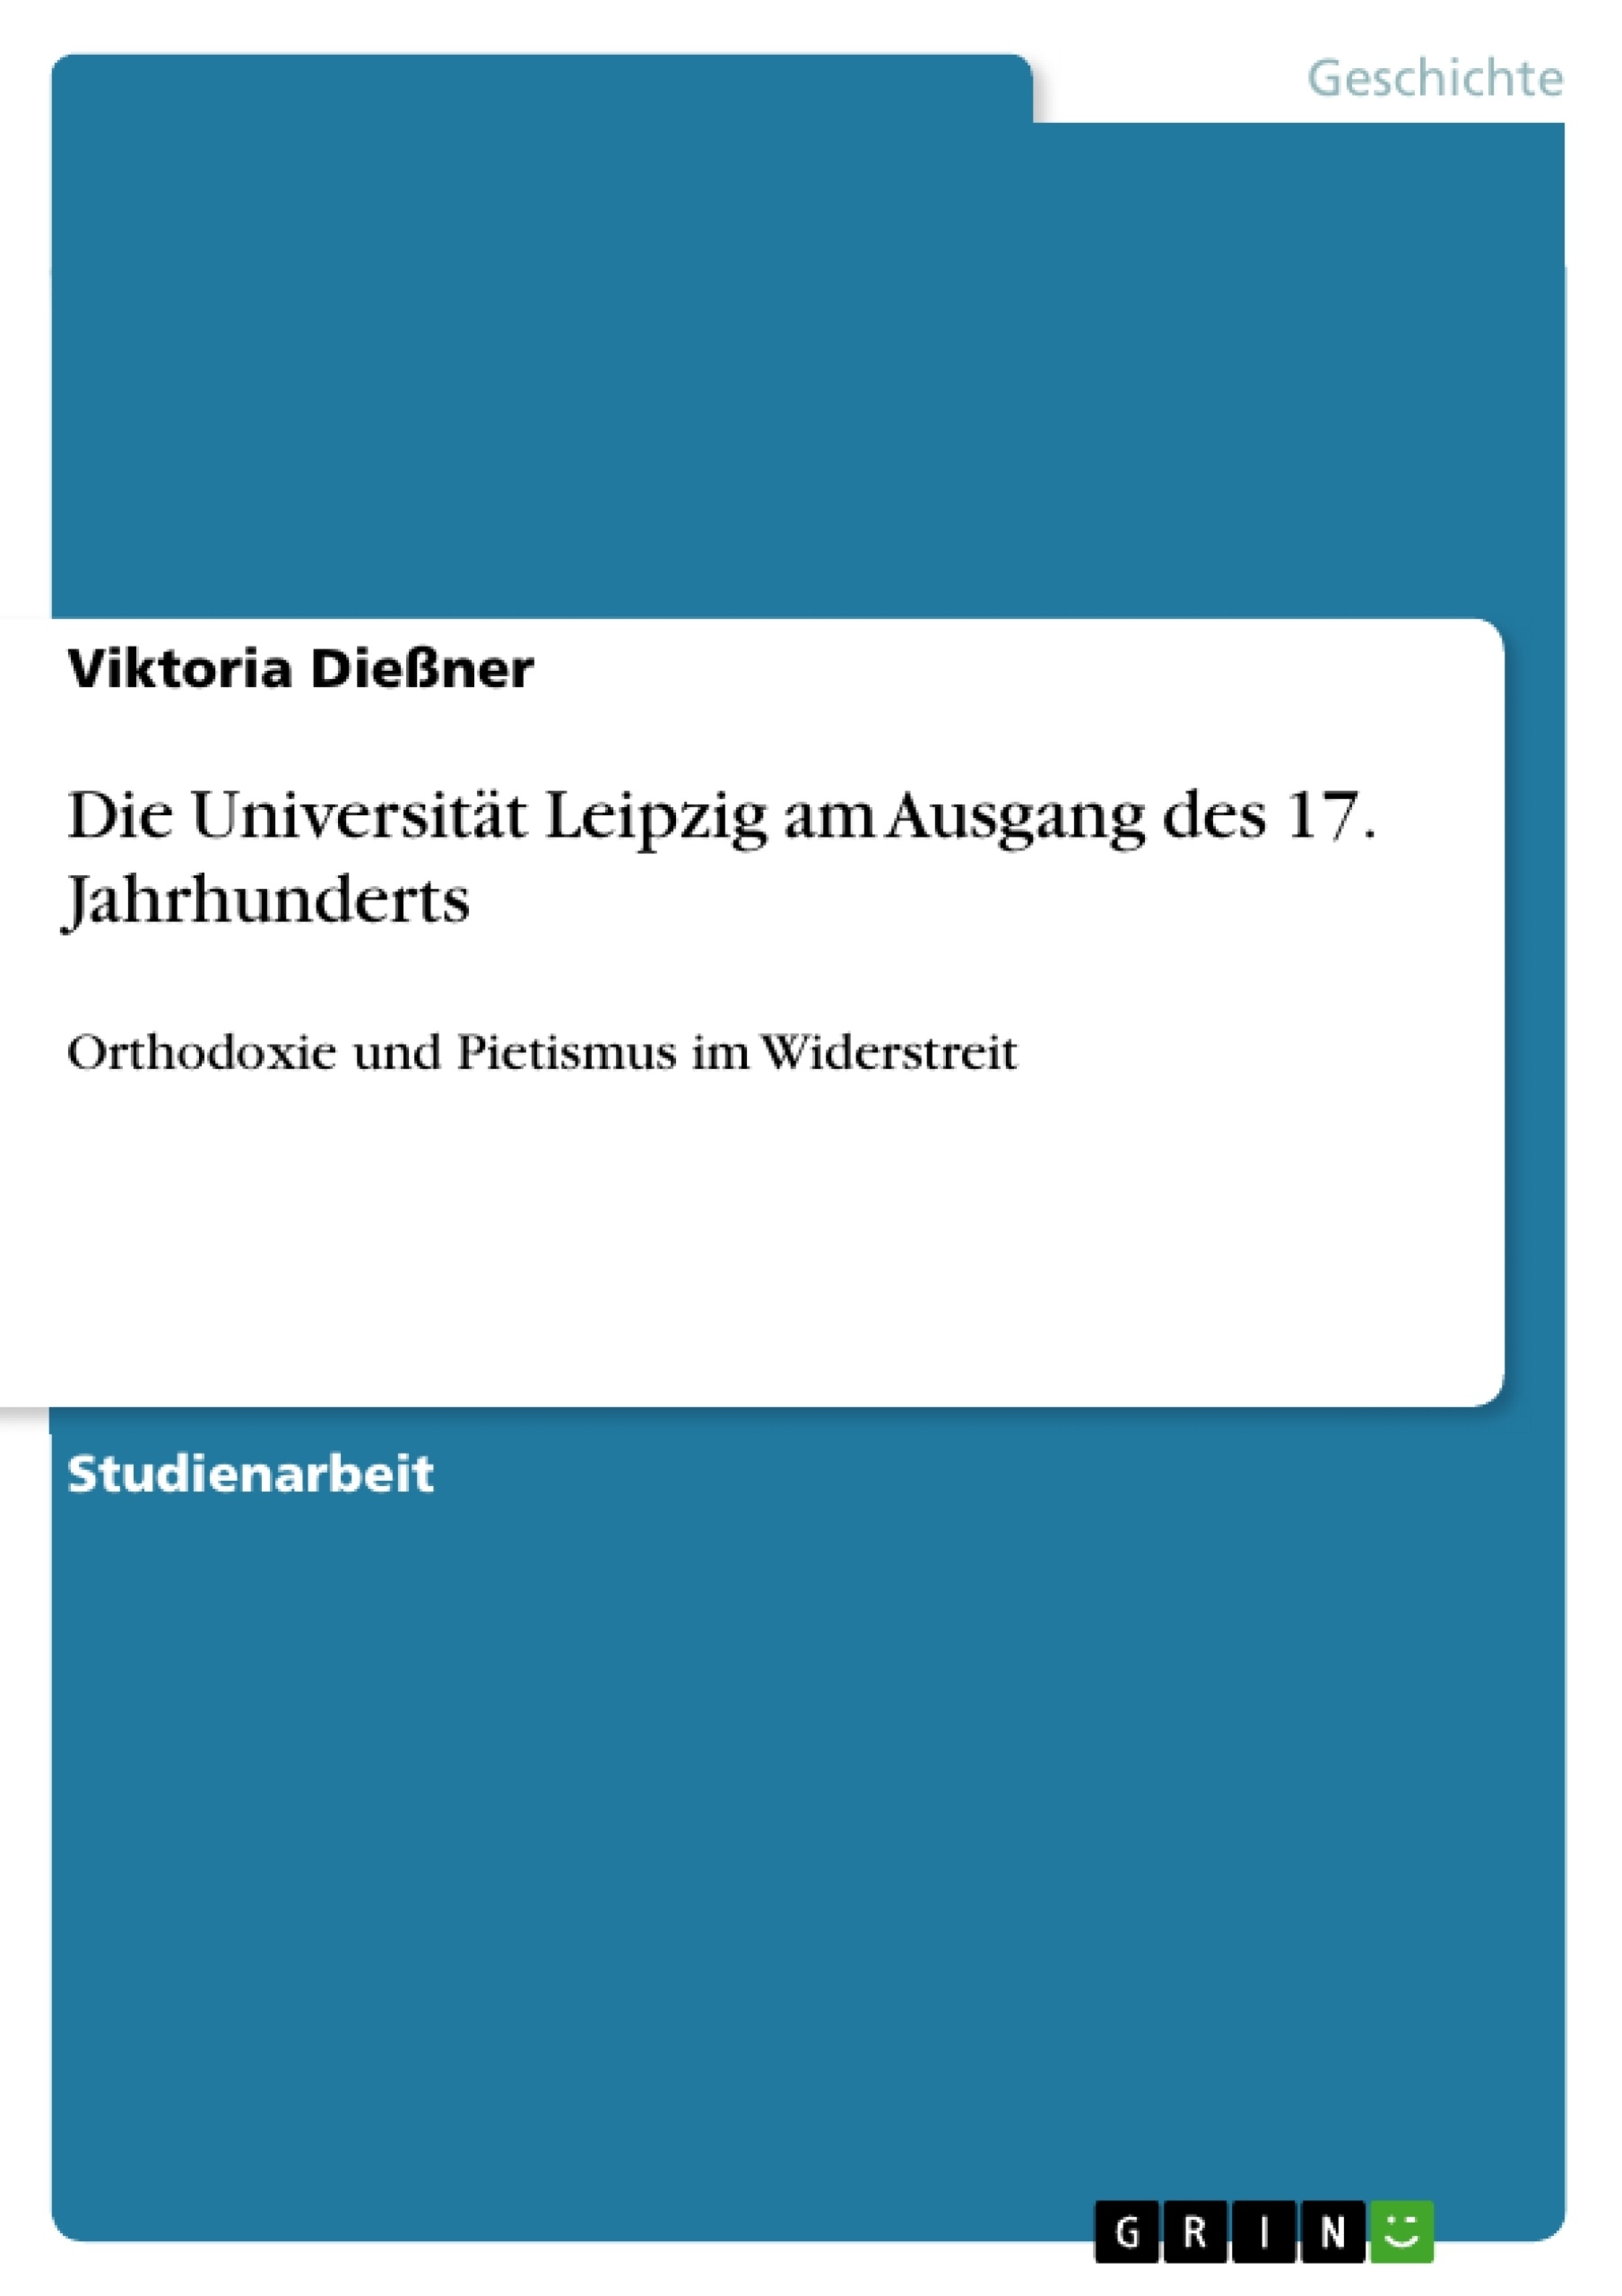 Titre: Die Universität Leipzig am Ausgang des 17. Jahrhunderts 